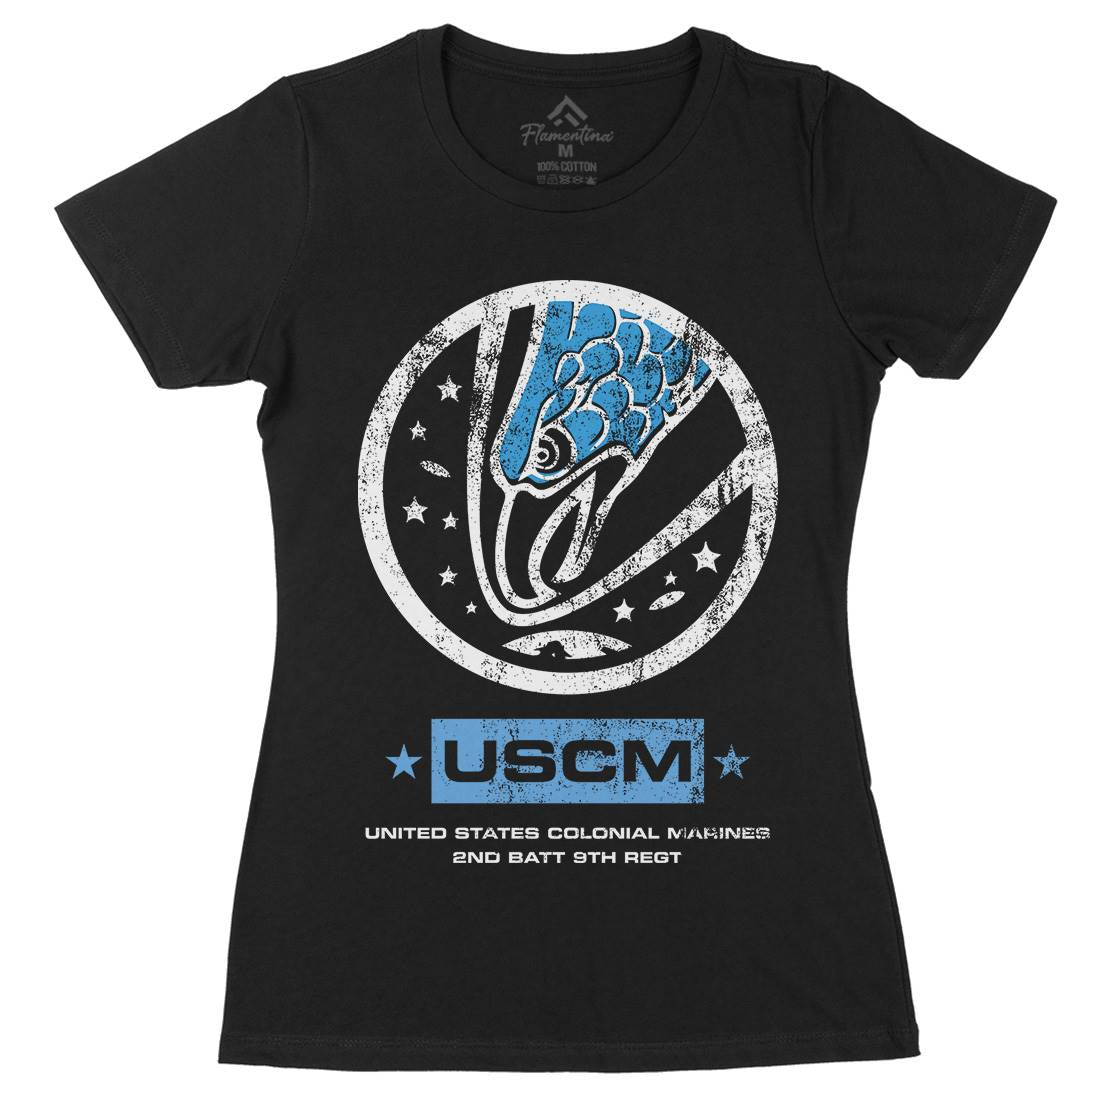 Uscm Womens Organic Crew Neck T-Shirt Space D135